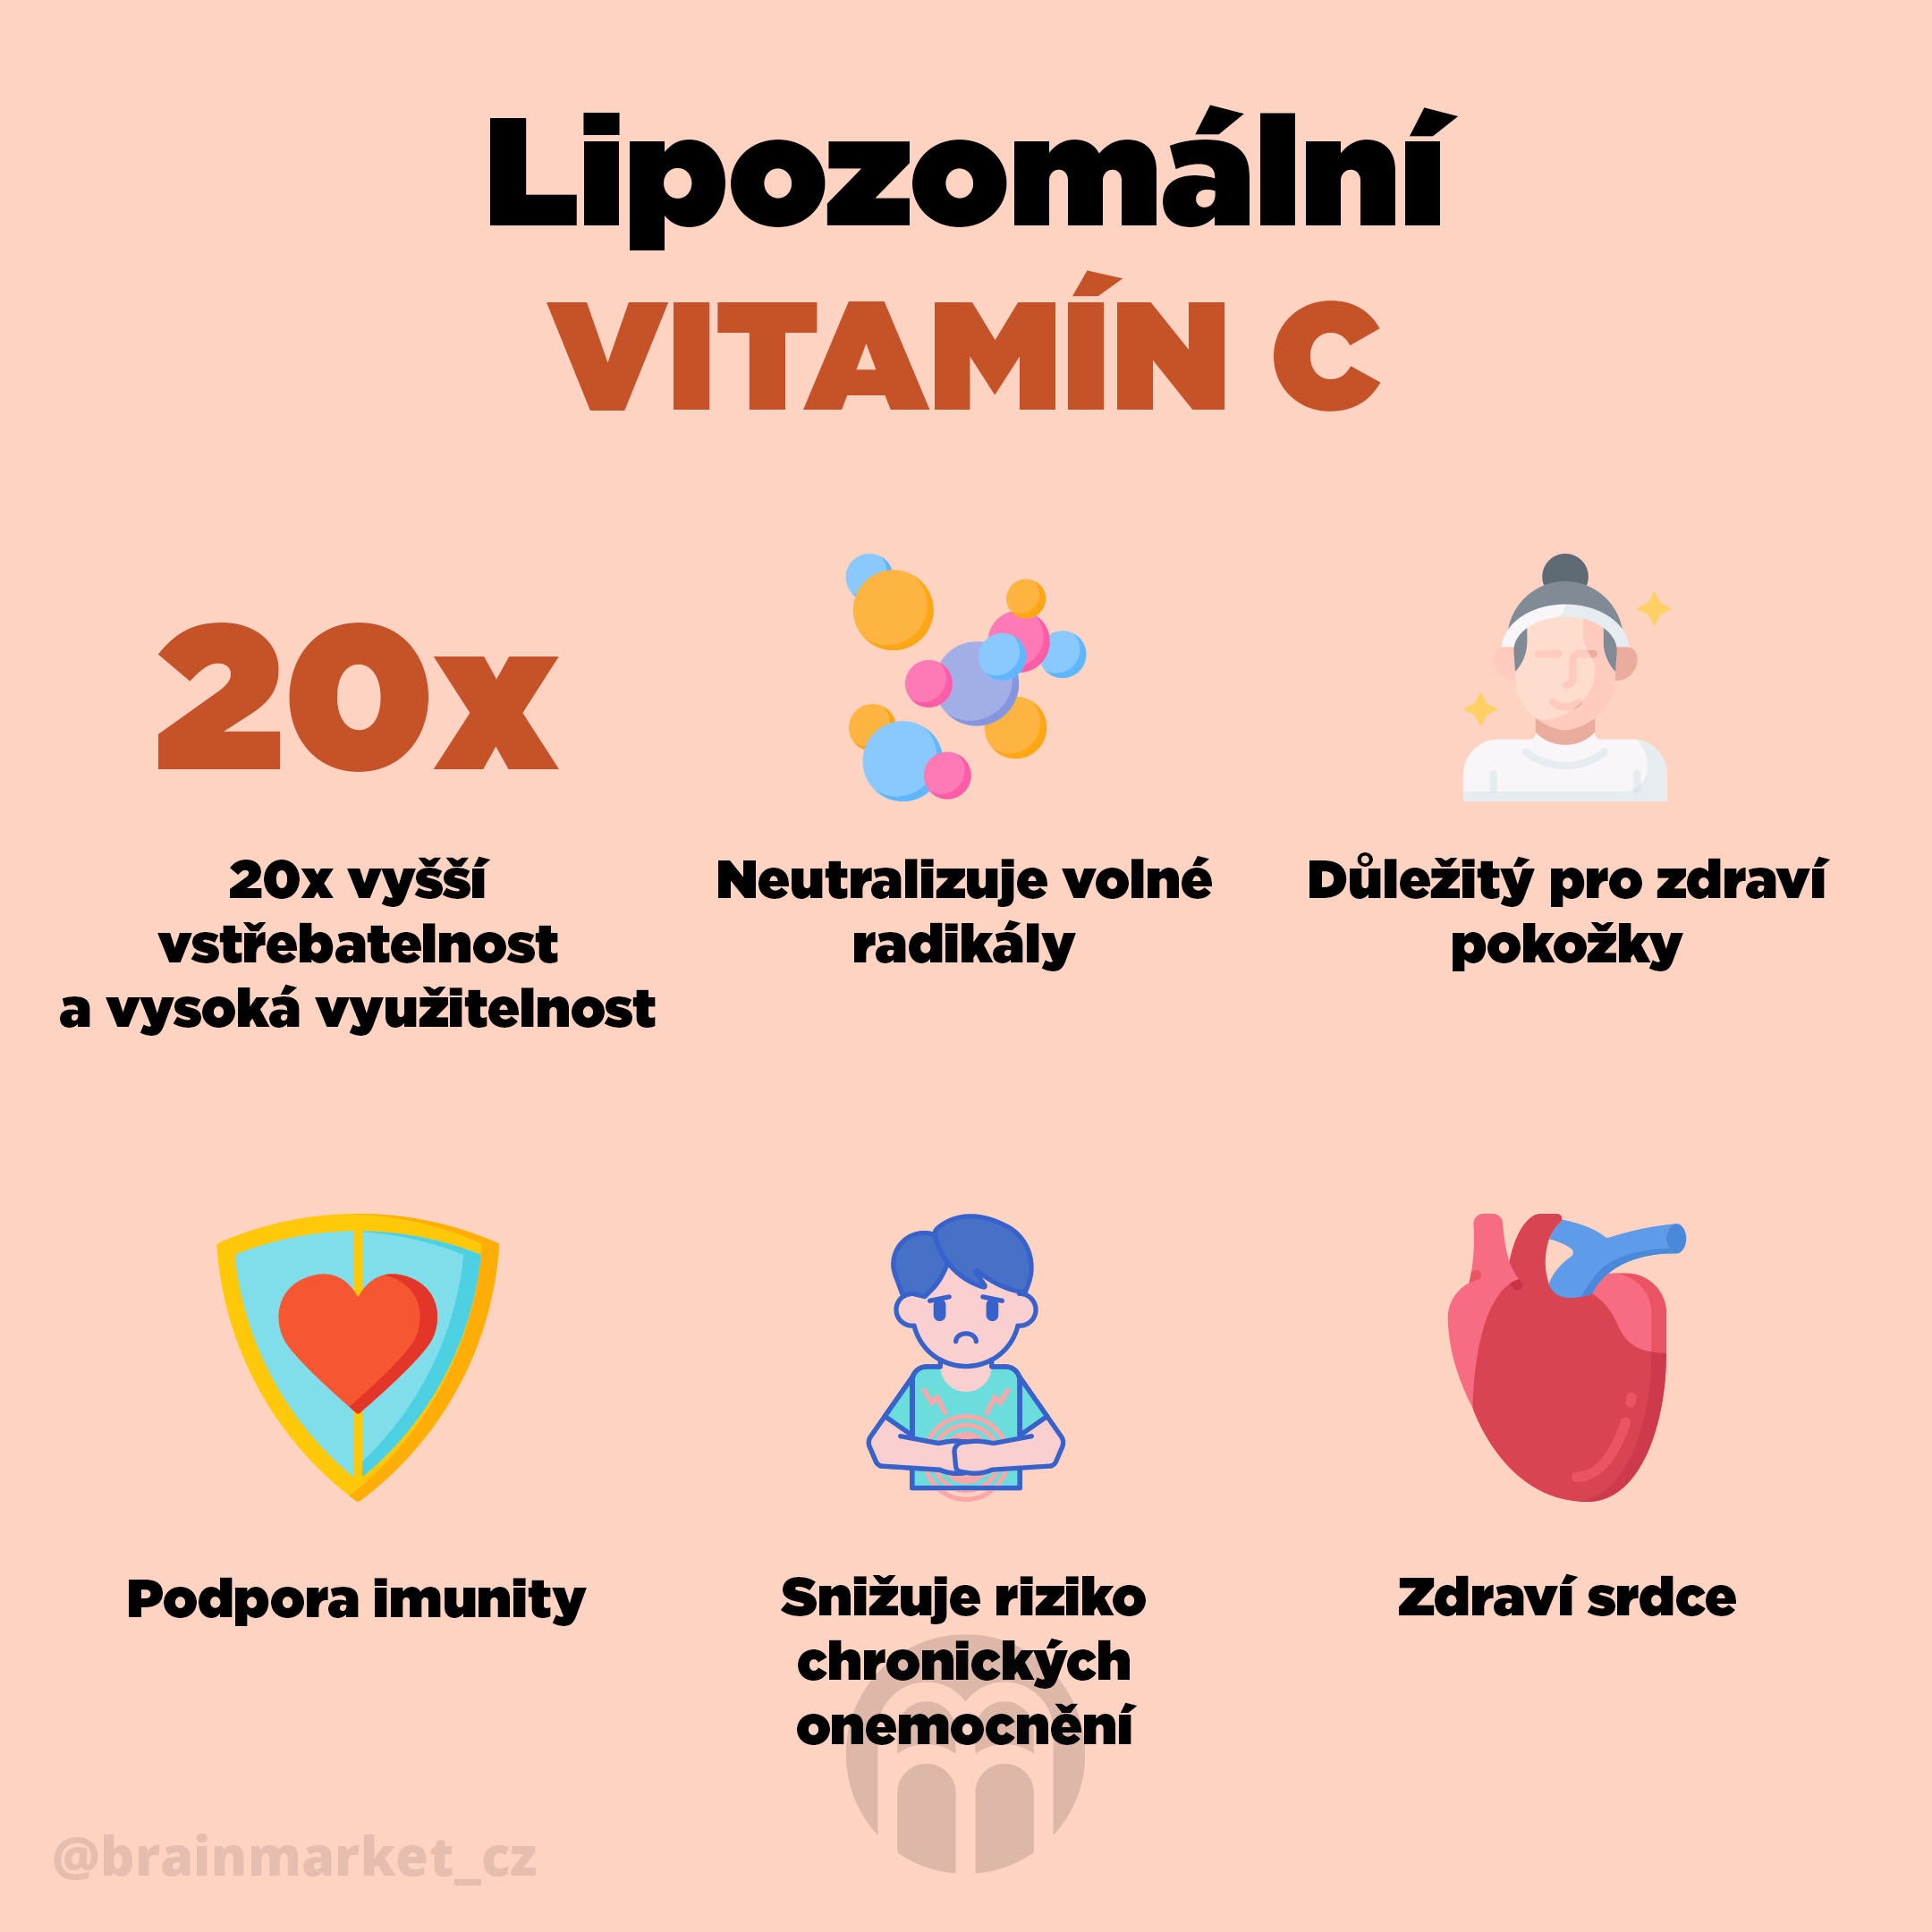 Lipozomální vitamin C